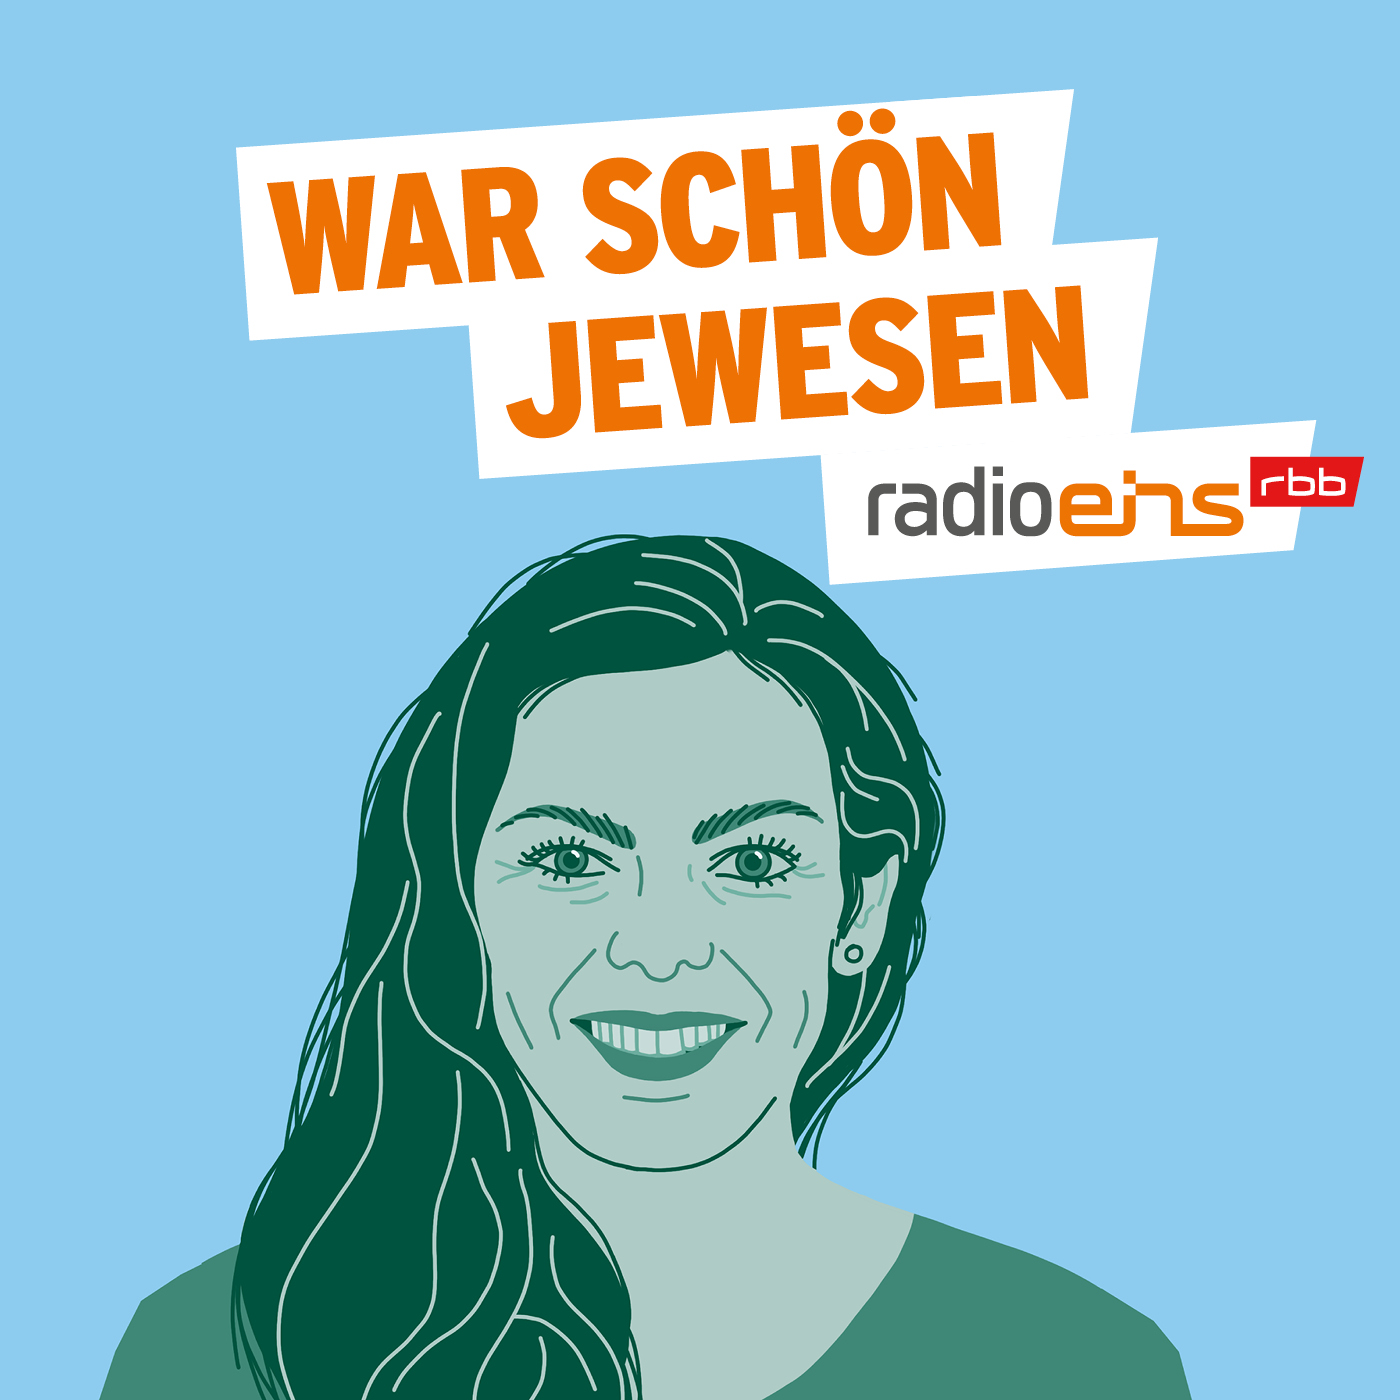 War schön jewesen - Pesto | radioeins